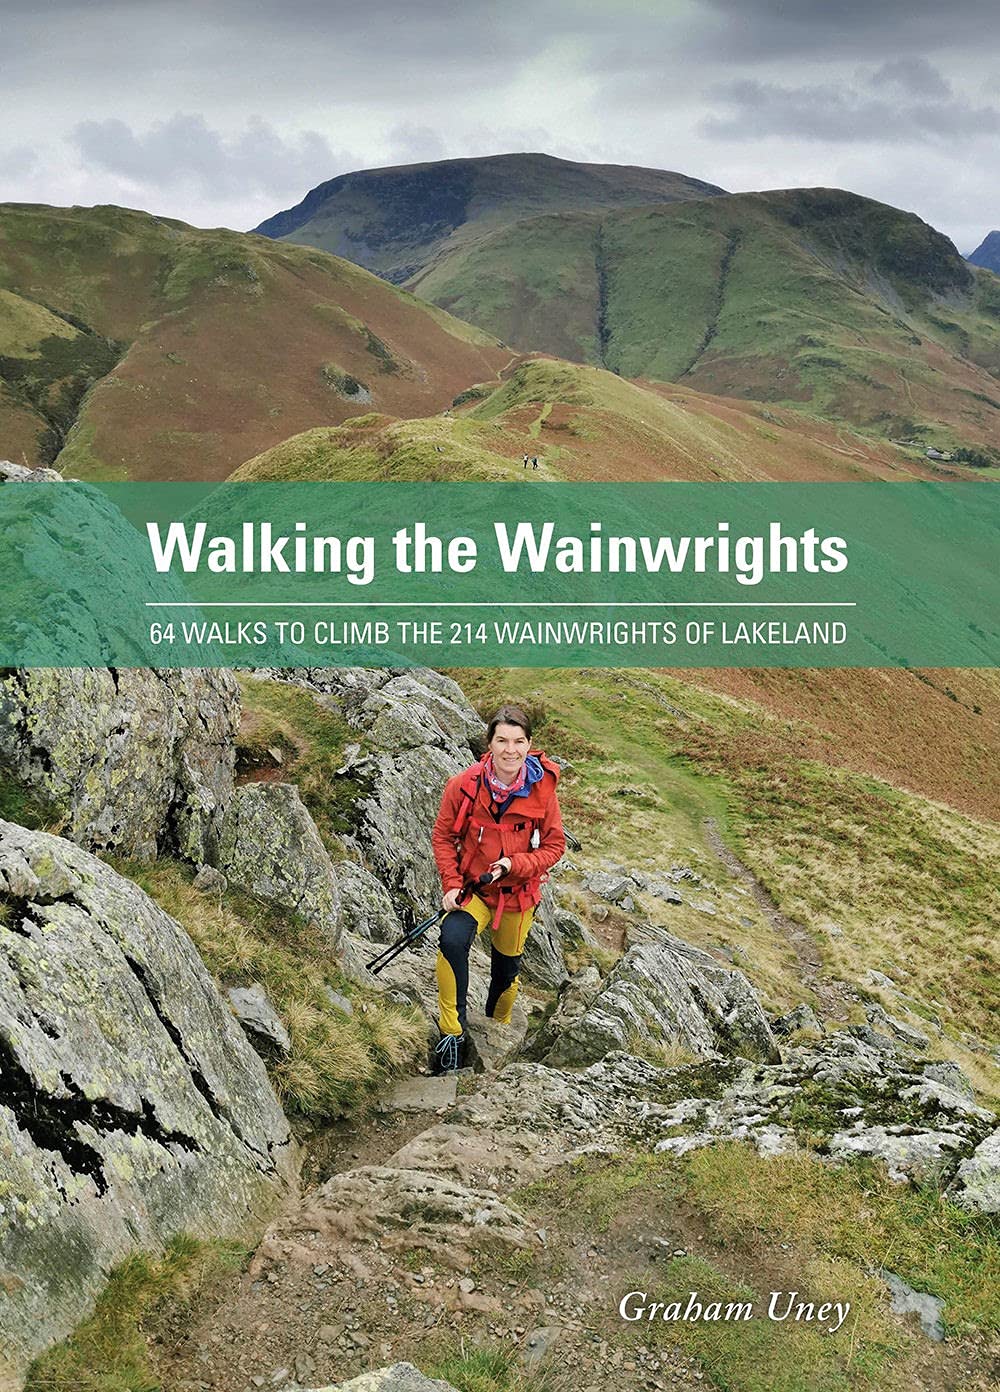 Walking the Wainwrights: 64 Walks to Climb the 214 Wainwrights of Lakeland